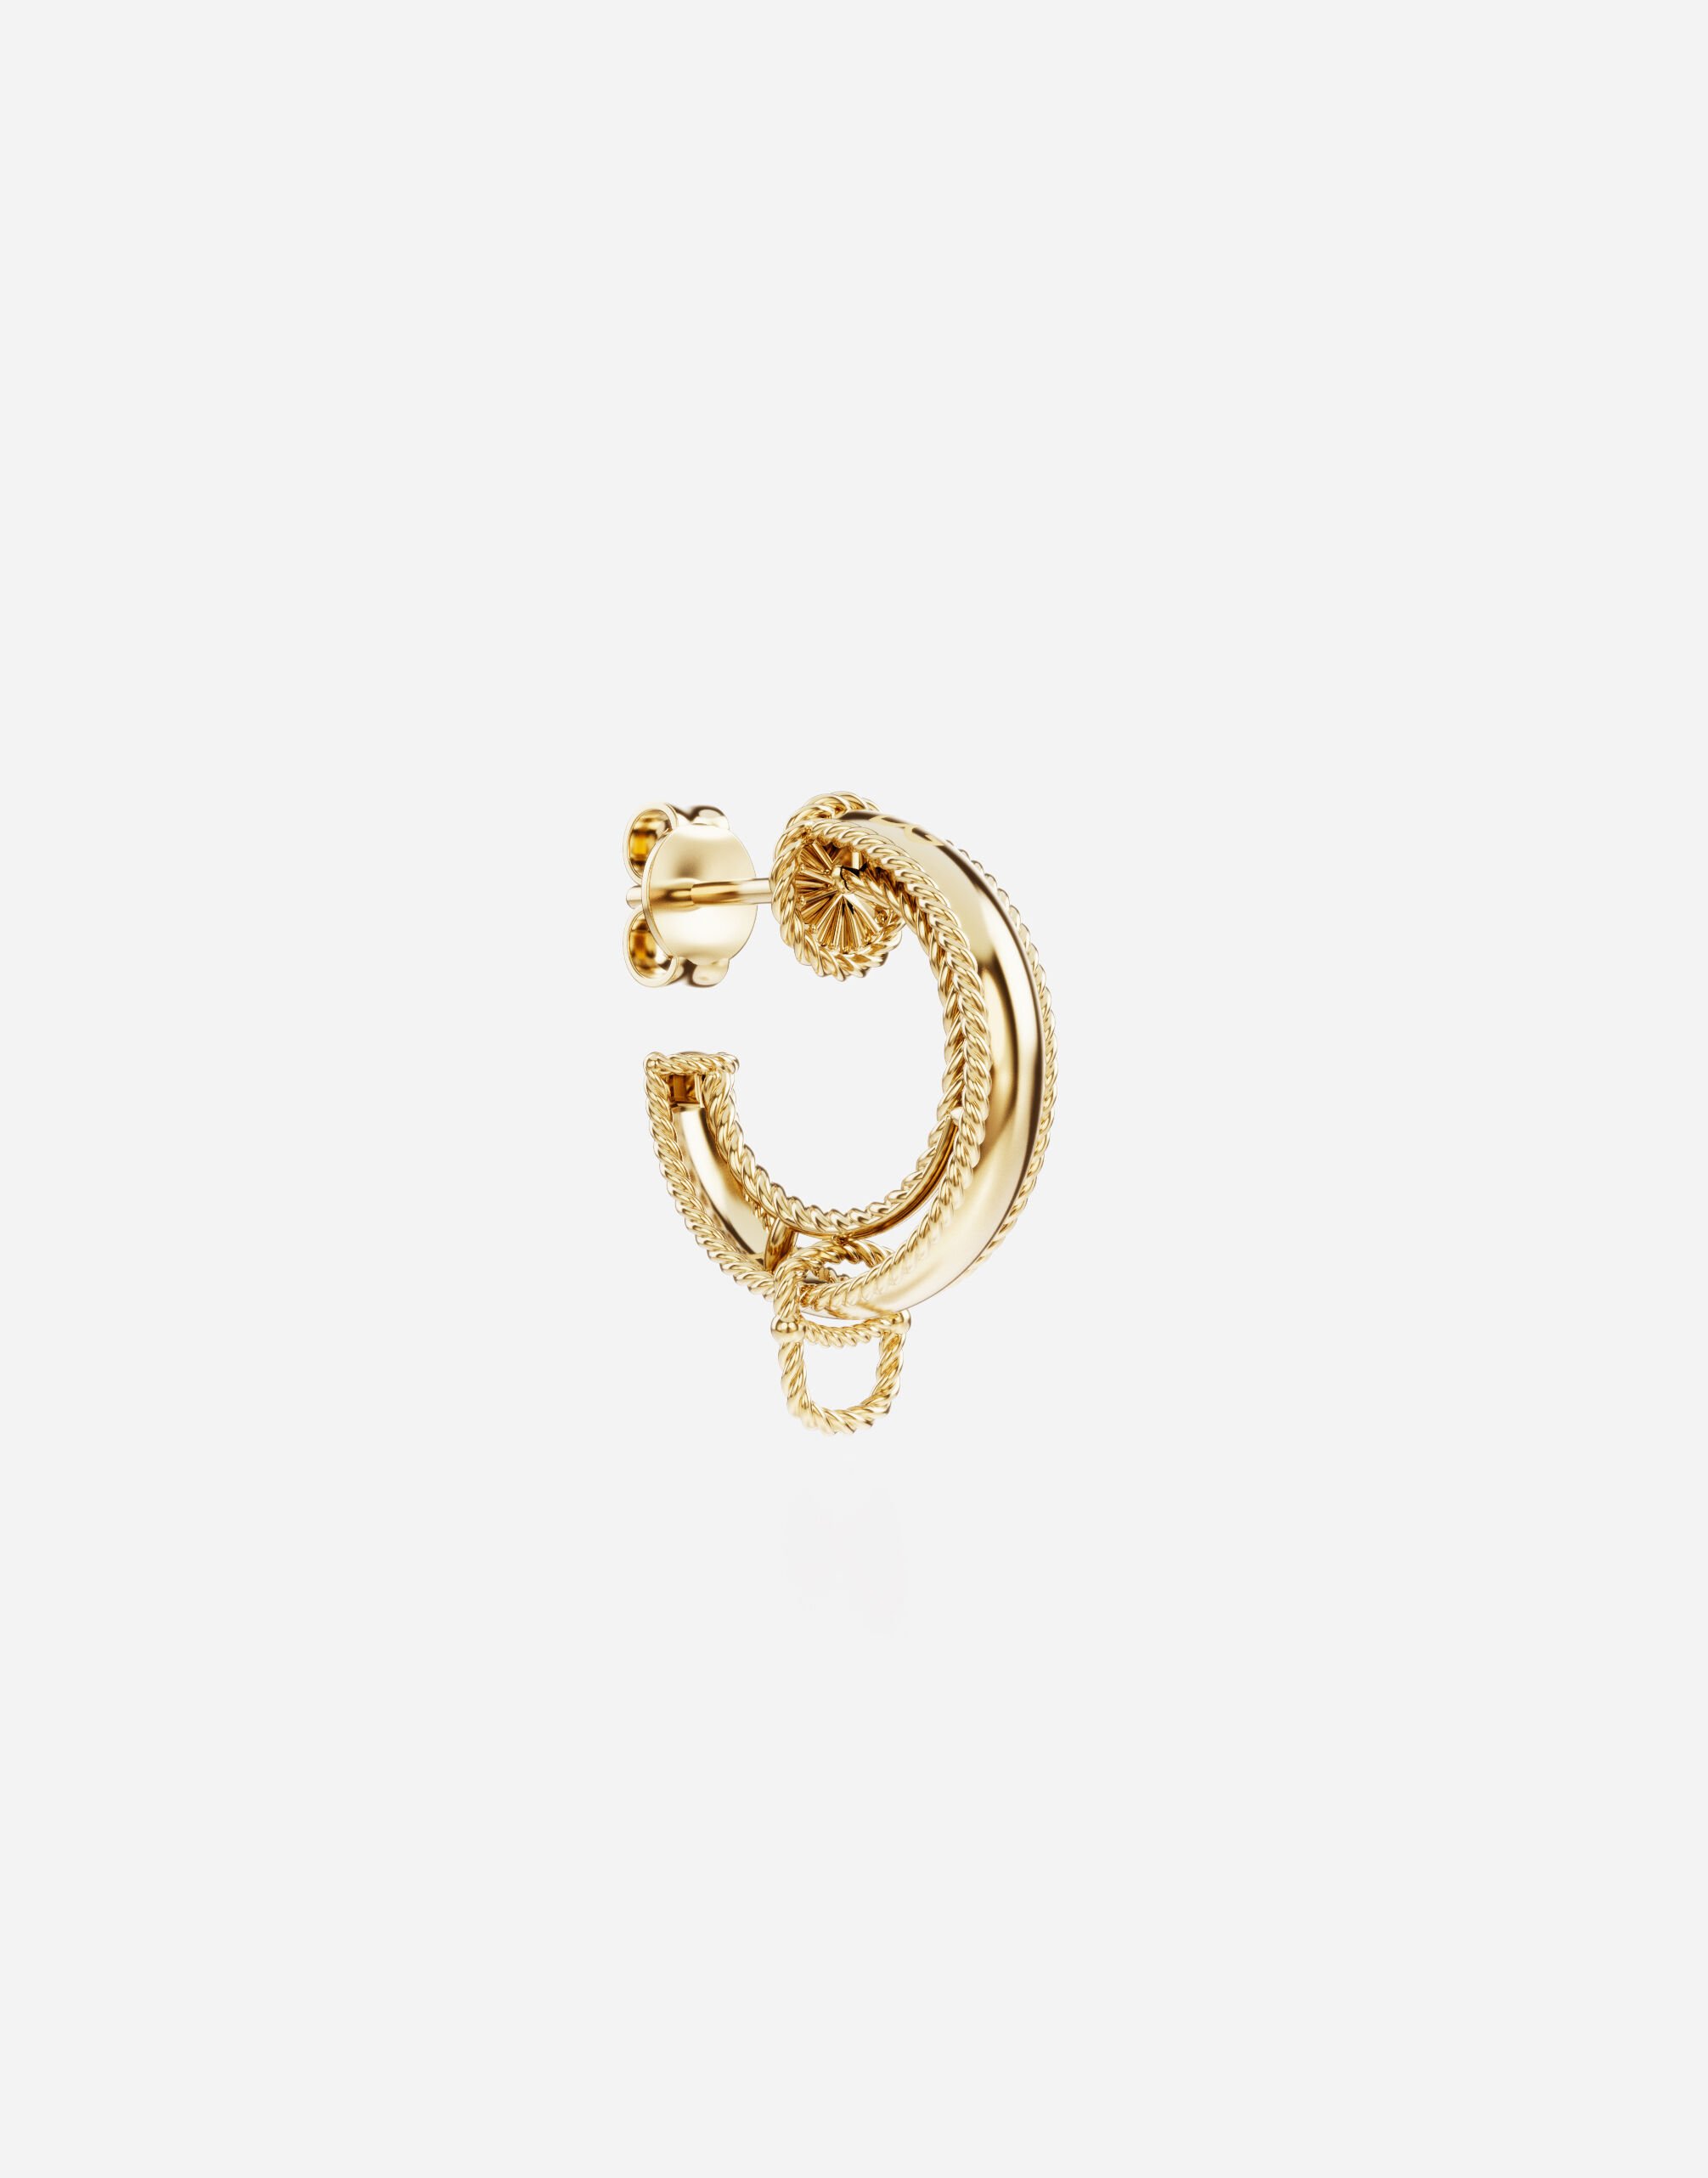 Dolce & Gabbana Rainbow Alphabet earring in yellow 18kt gold Gold WANR1GWMIXA